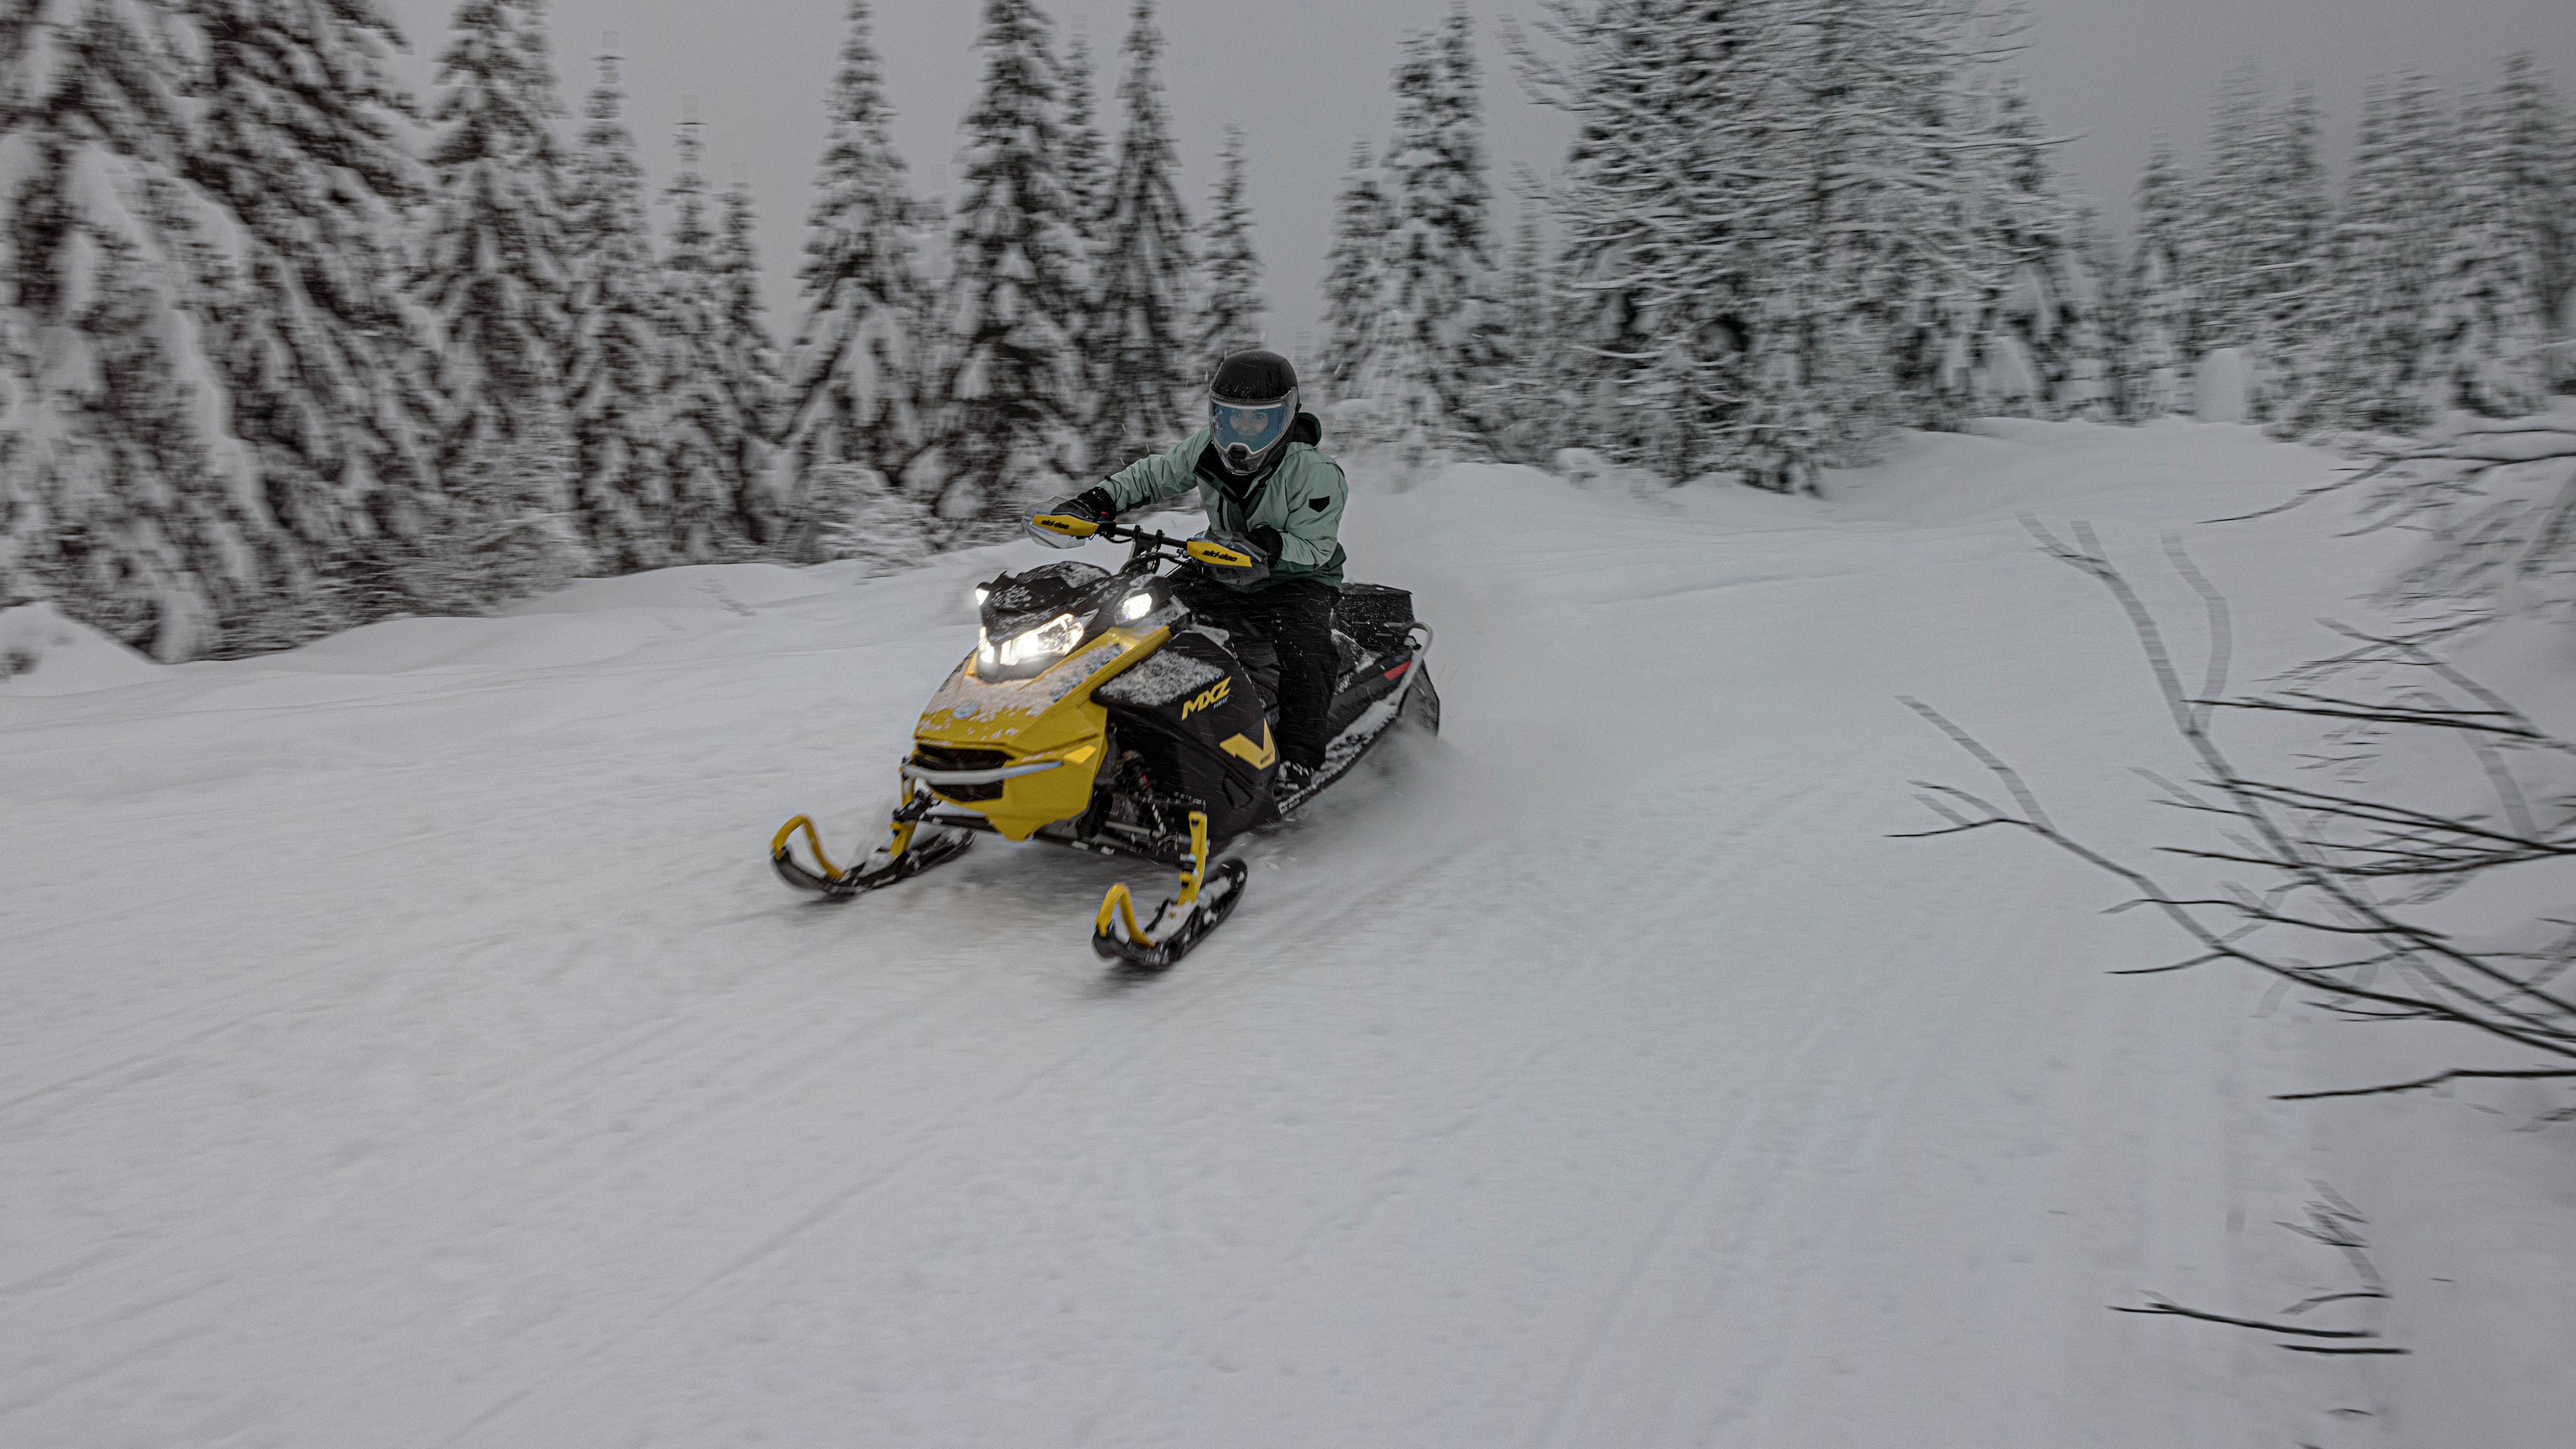 2025 trail snowmobile Ski-Doo MXZ NEO riding through a forest